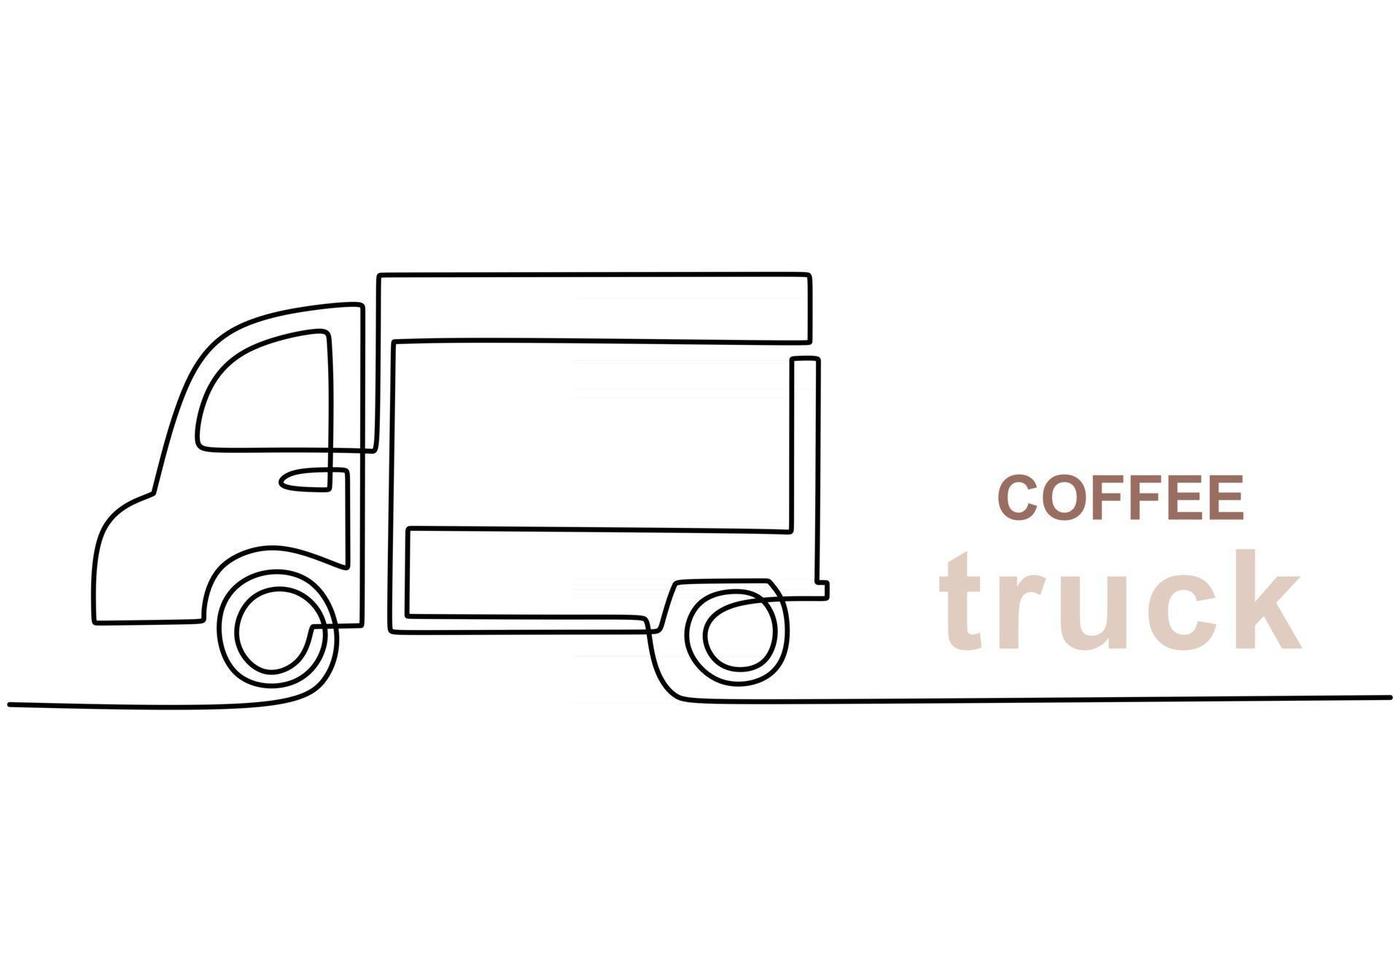 singola linea continua di coffee food truck. camion di cibo di caffè in uno stile di linea isolato su priorità bassa bianca. vettore